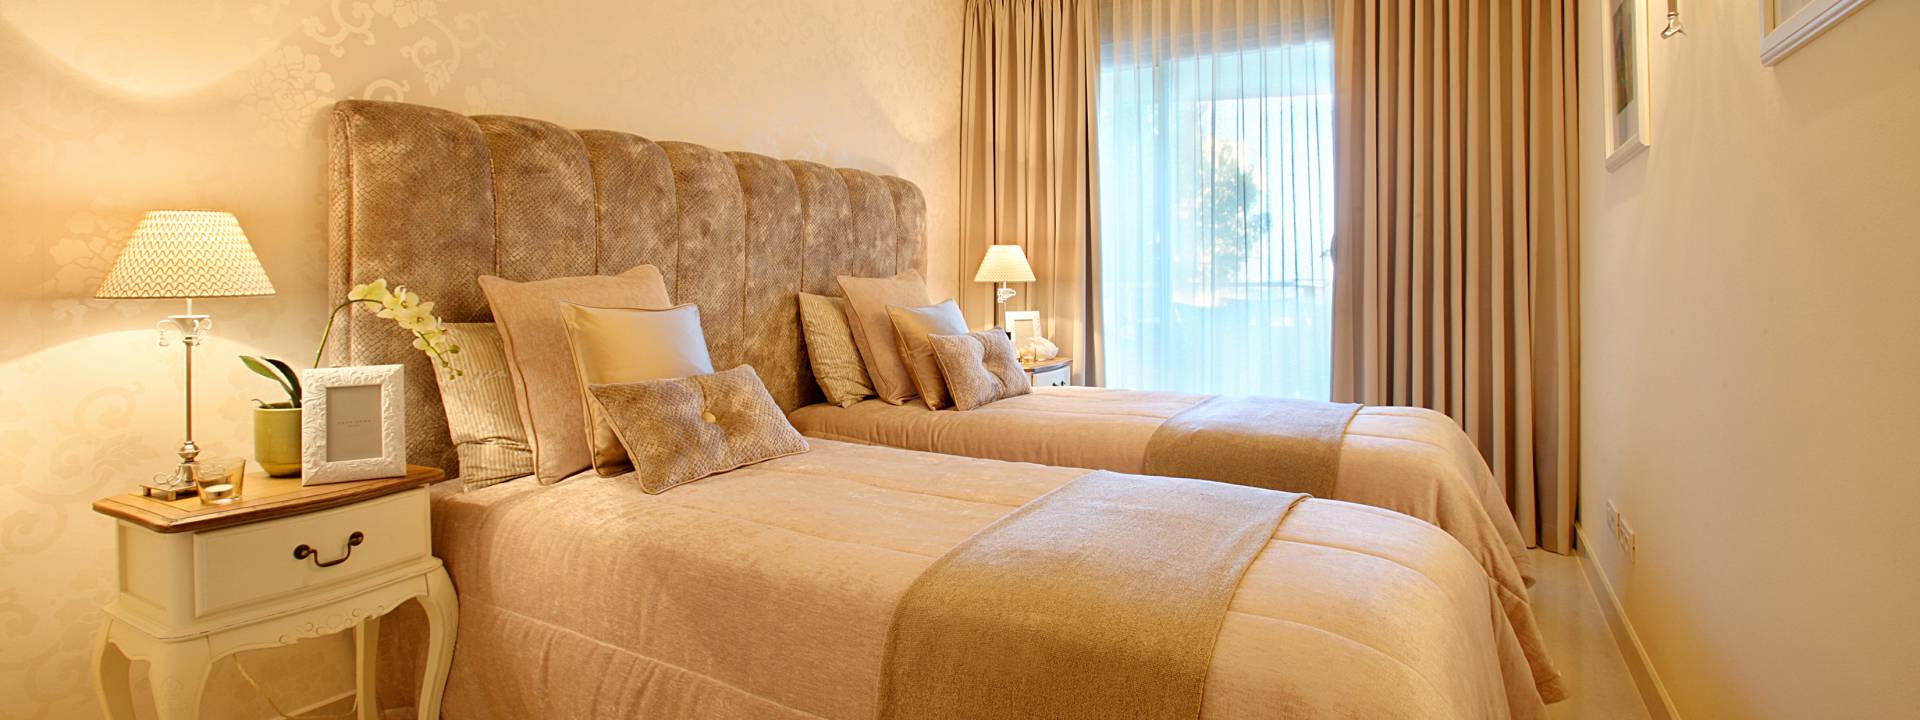 Luxury bedroom, Yvette Taylor Lo, neutral deco